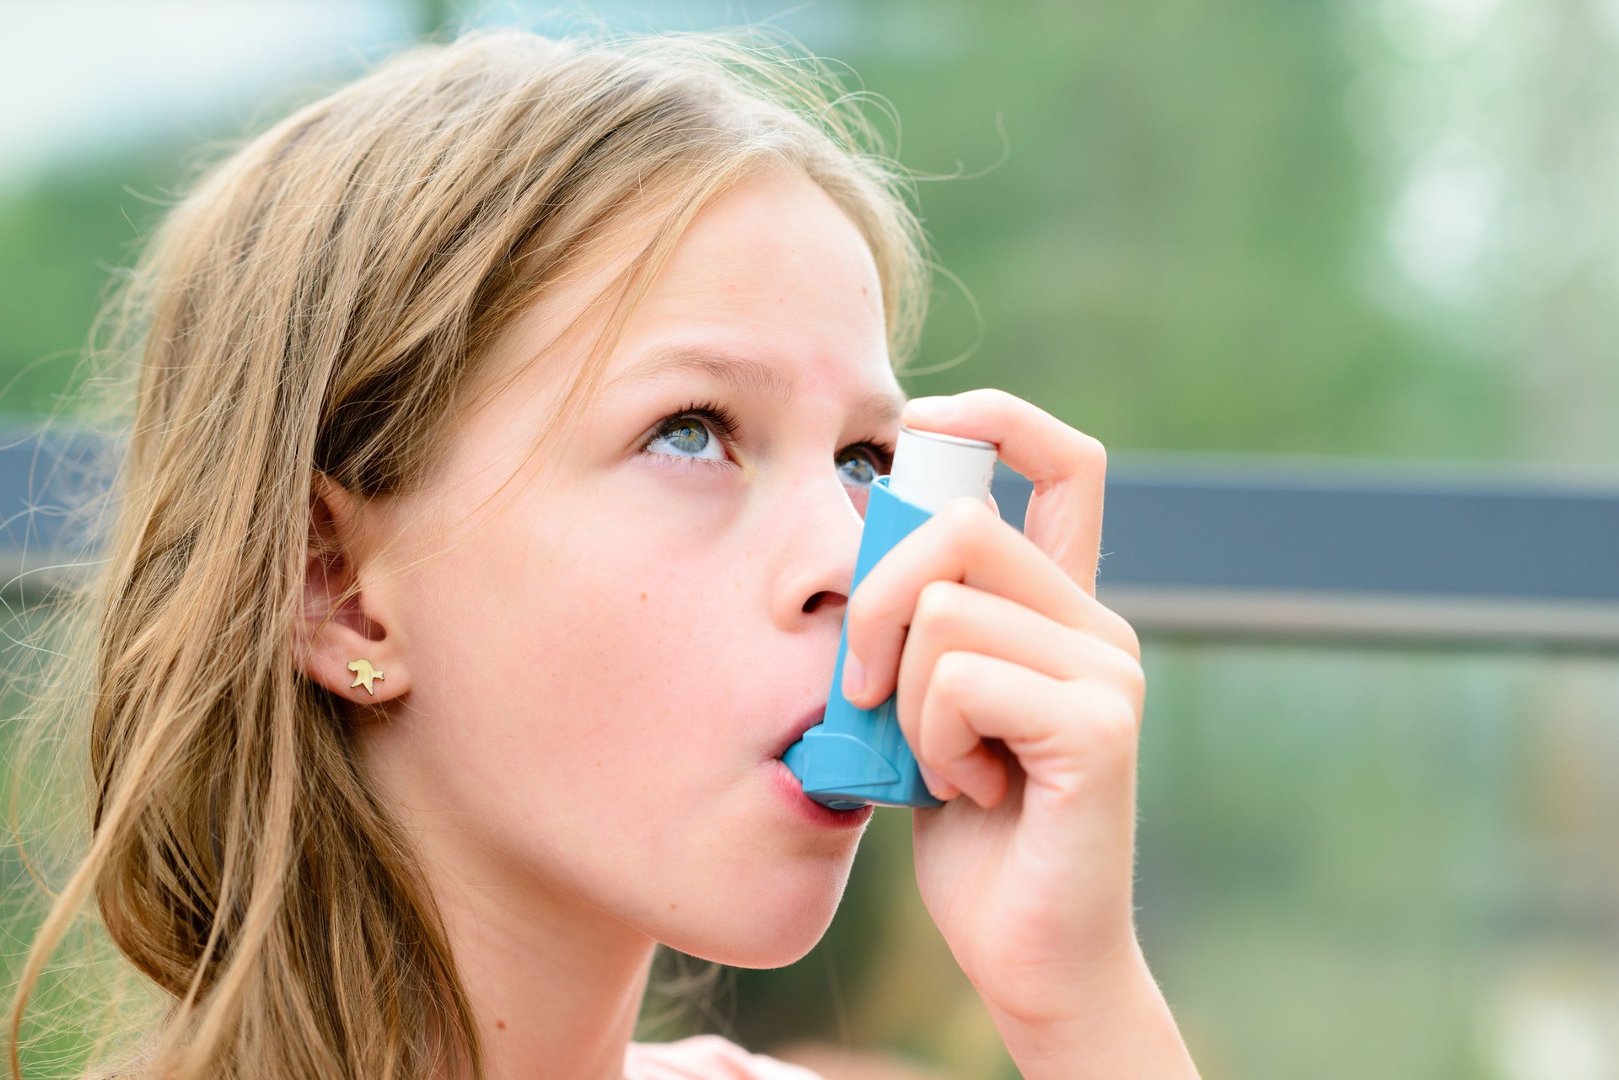 Astma oskrzelowa – przyczyny, objawy, rozpoznanie, klasyfikacja i leczenie.  Sprawdź, jak pomóc osobie z atakiem astmy oskrzelowej! | Strona Zdrowia